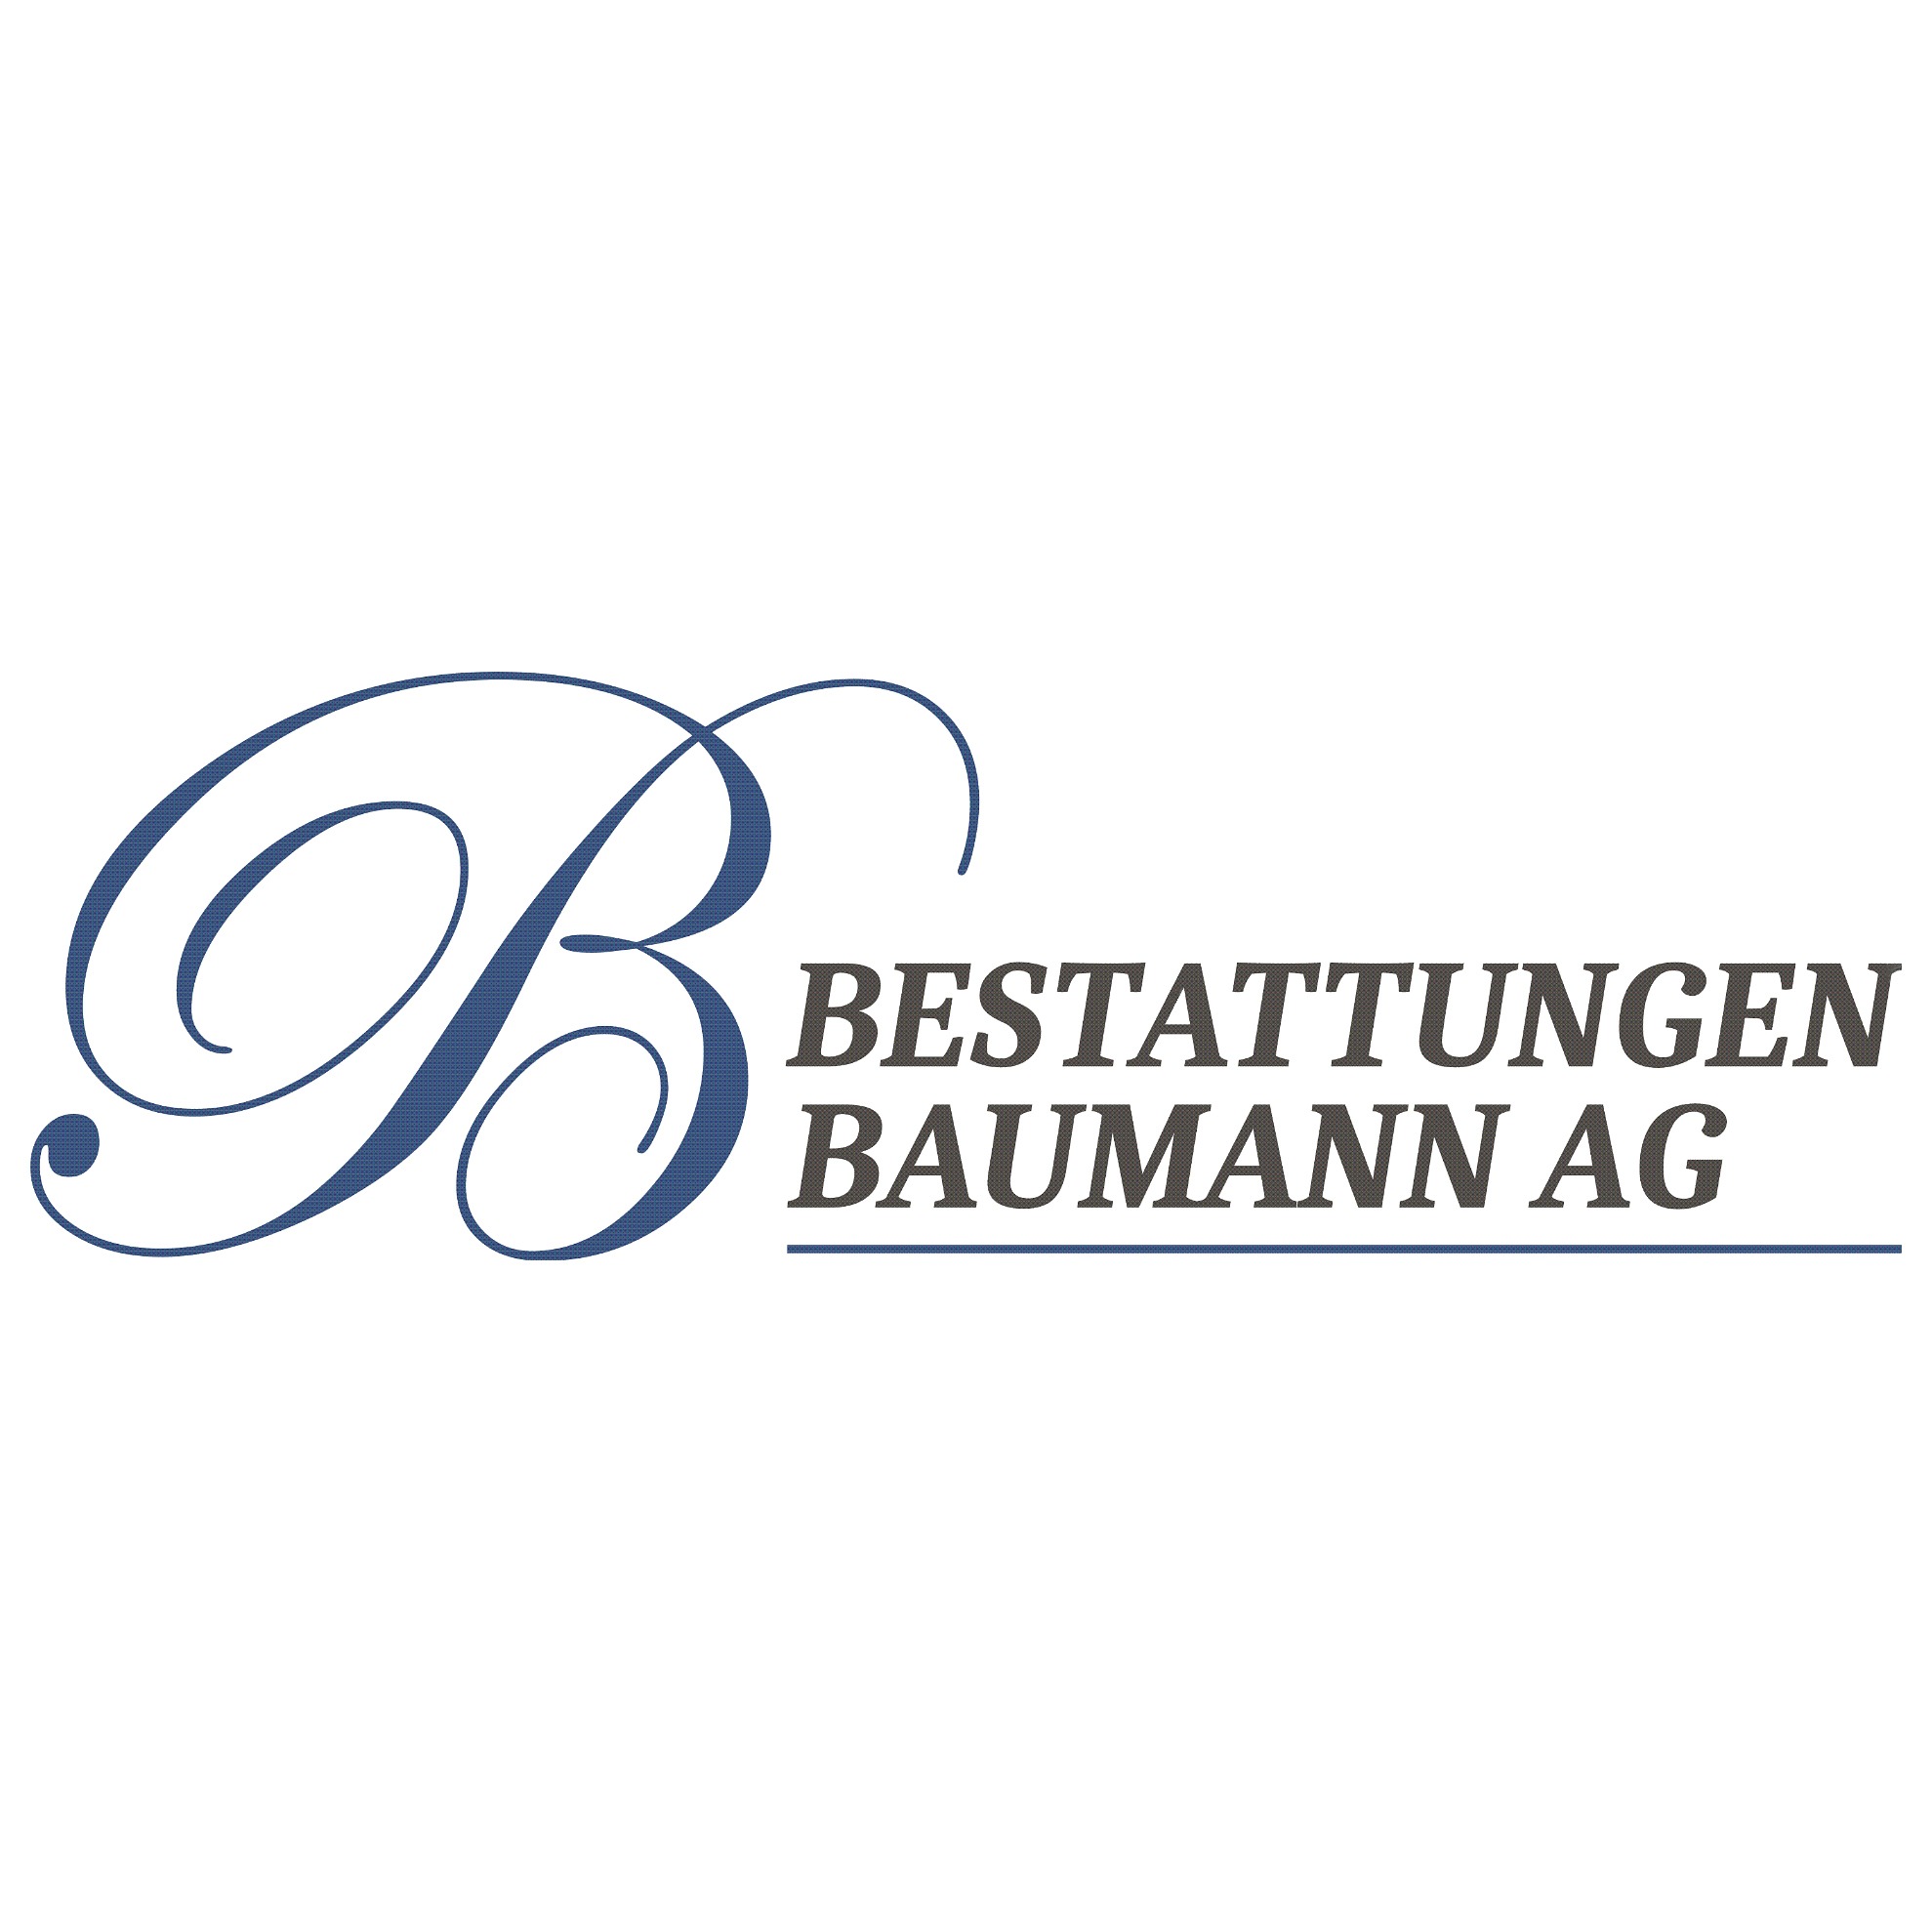 Bestattungen Baumann AG Logo